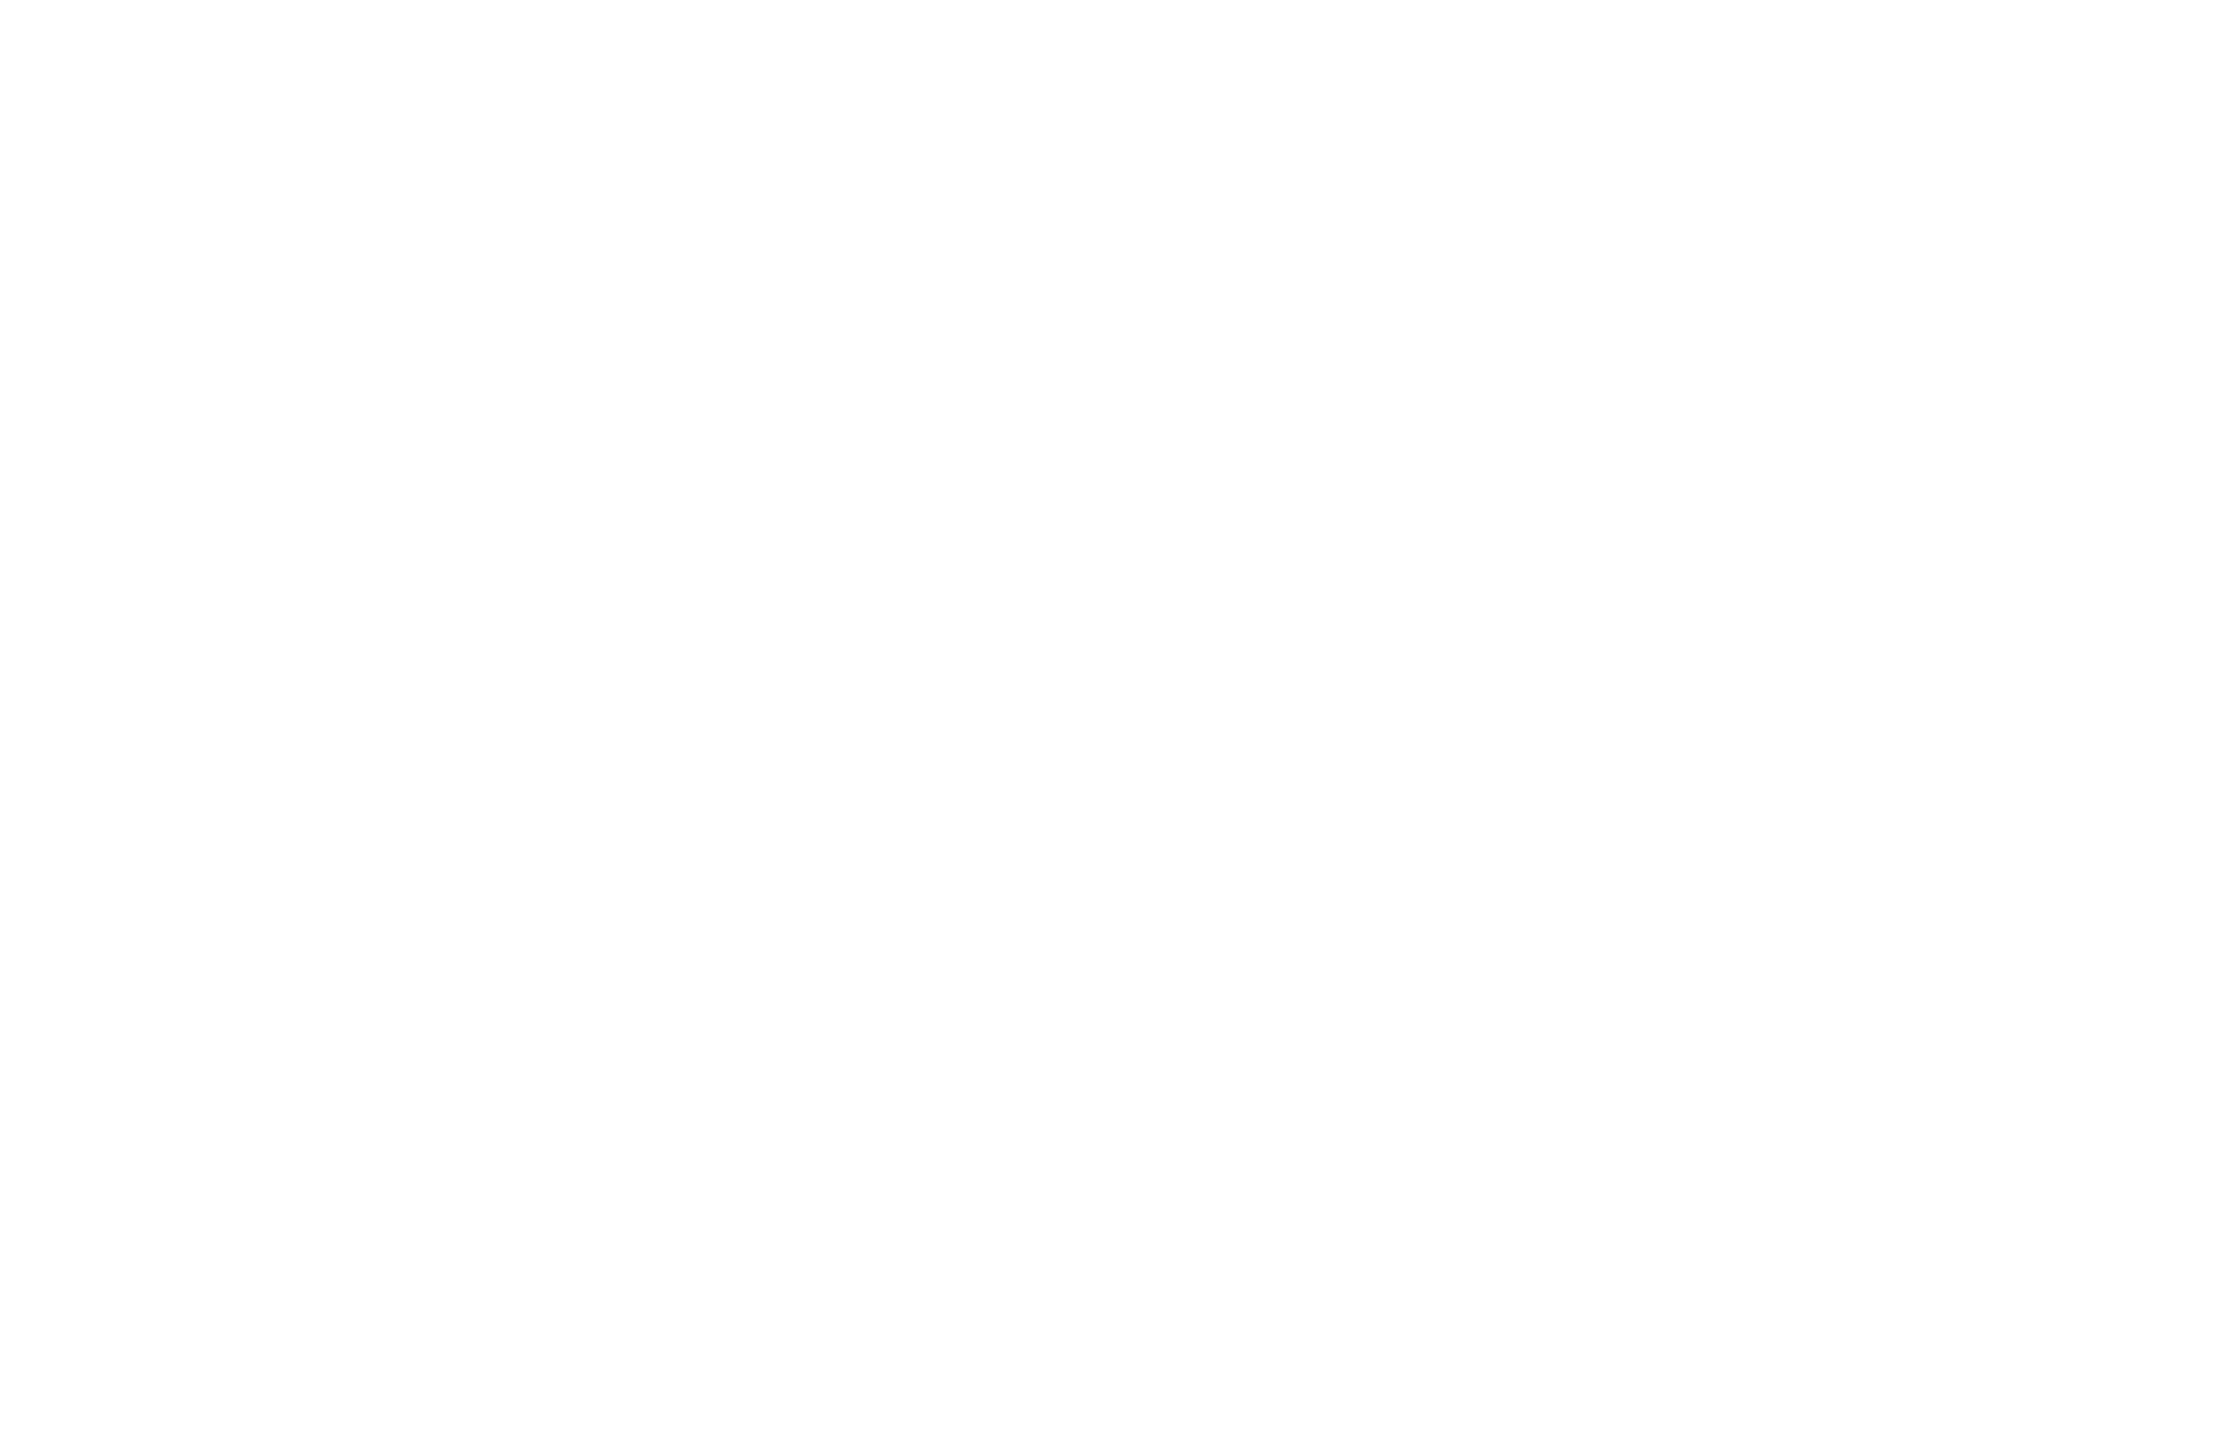 Tecate Sonoro Logo